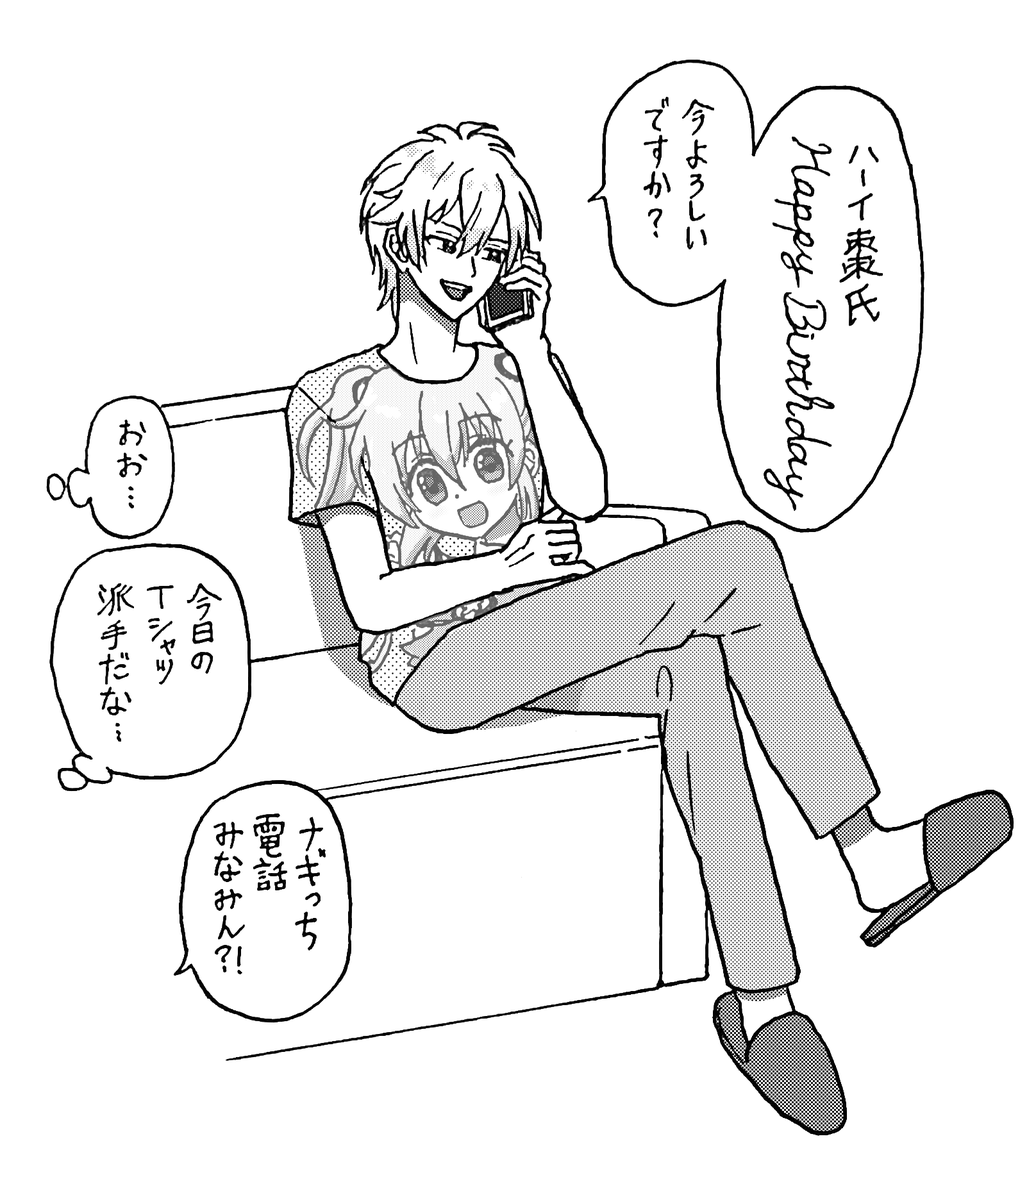 痛Tシャツ (みなみちゃんお誕生日おめでとう🐍)